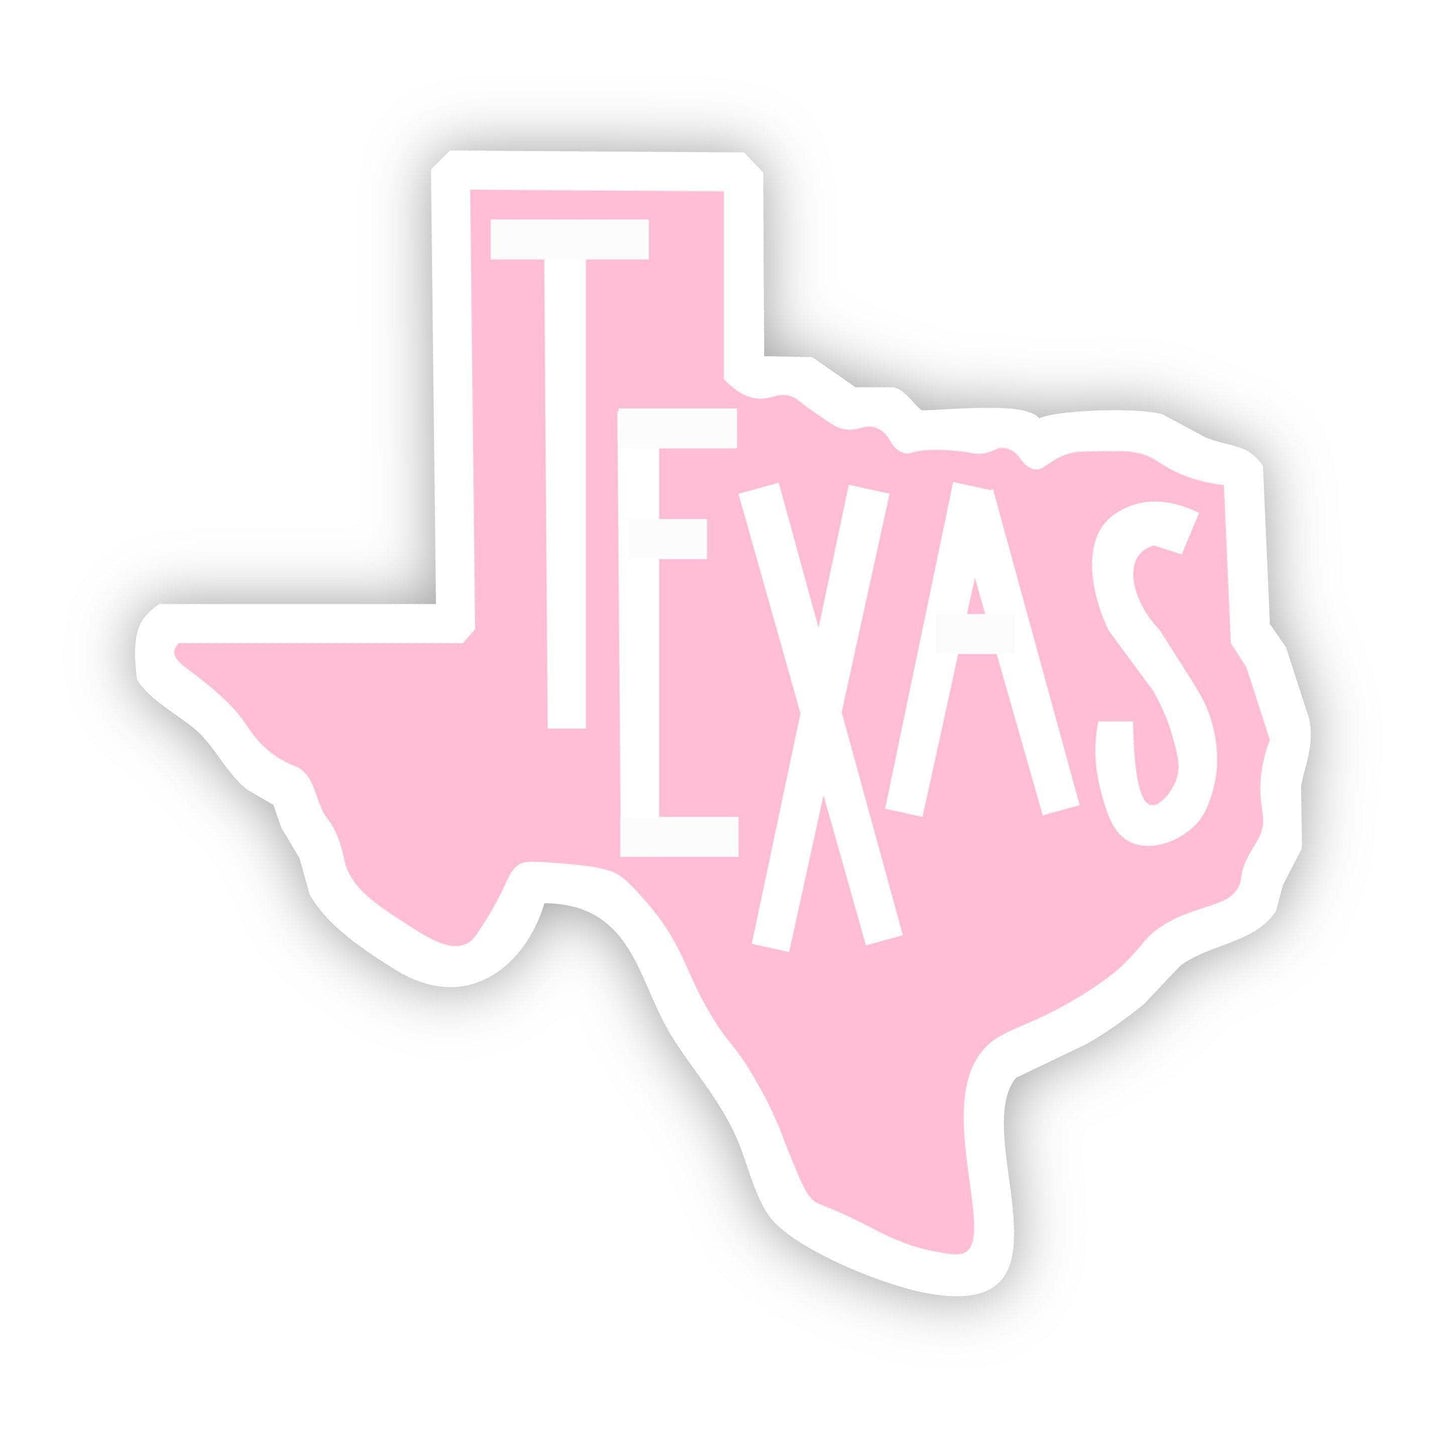 Texas Pink Sticker